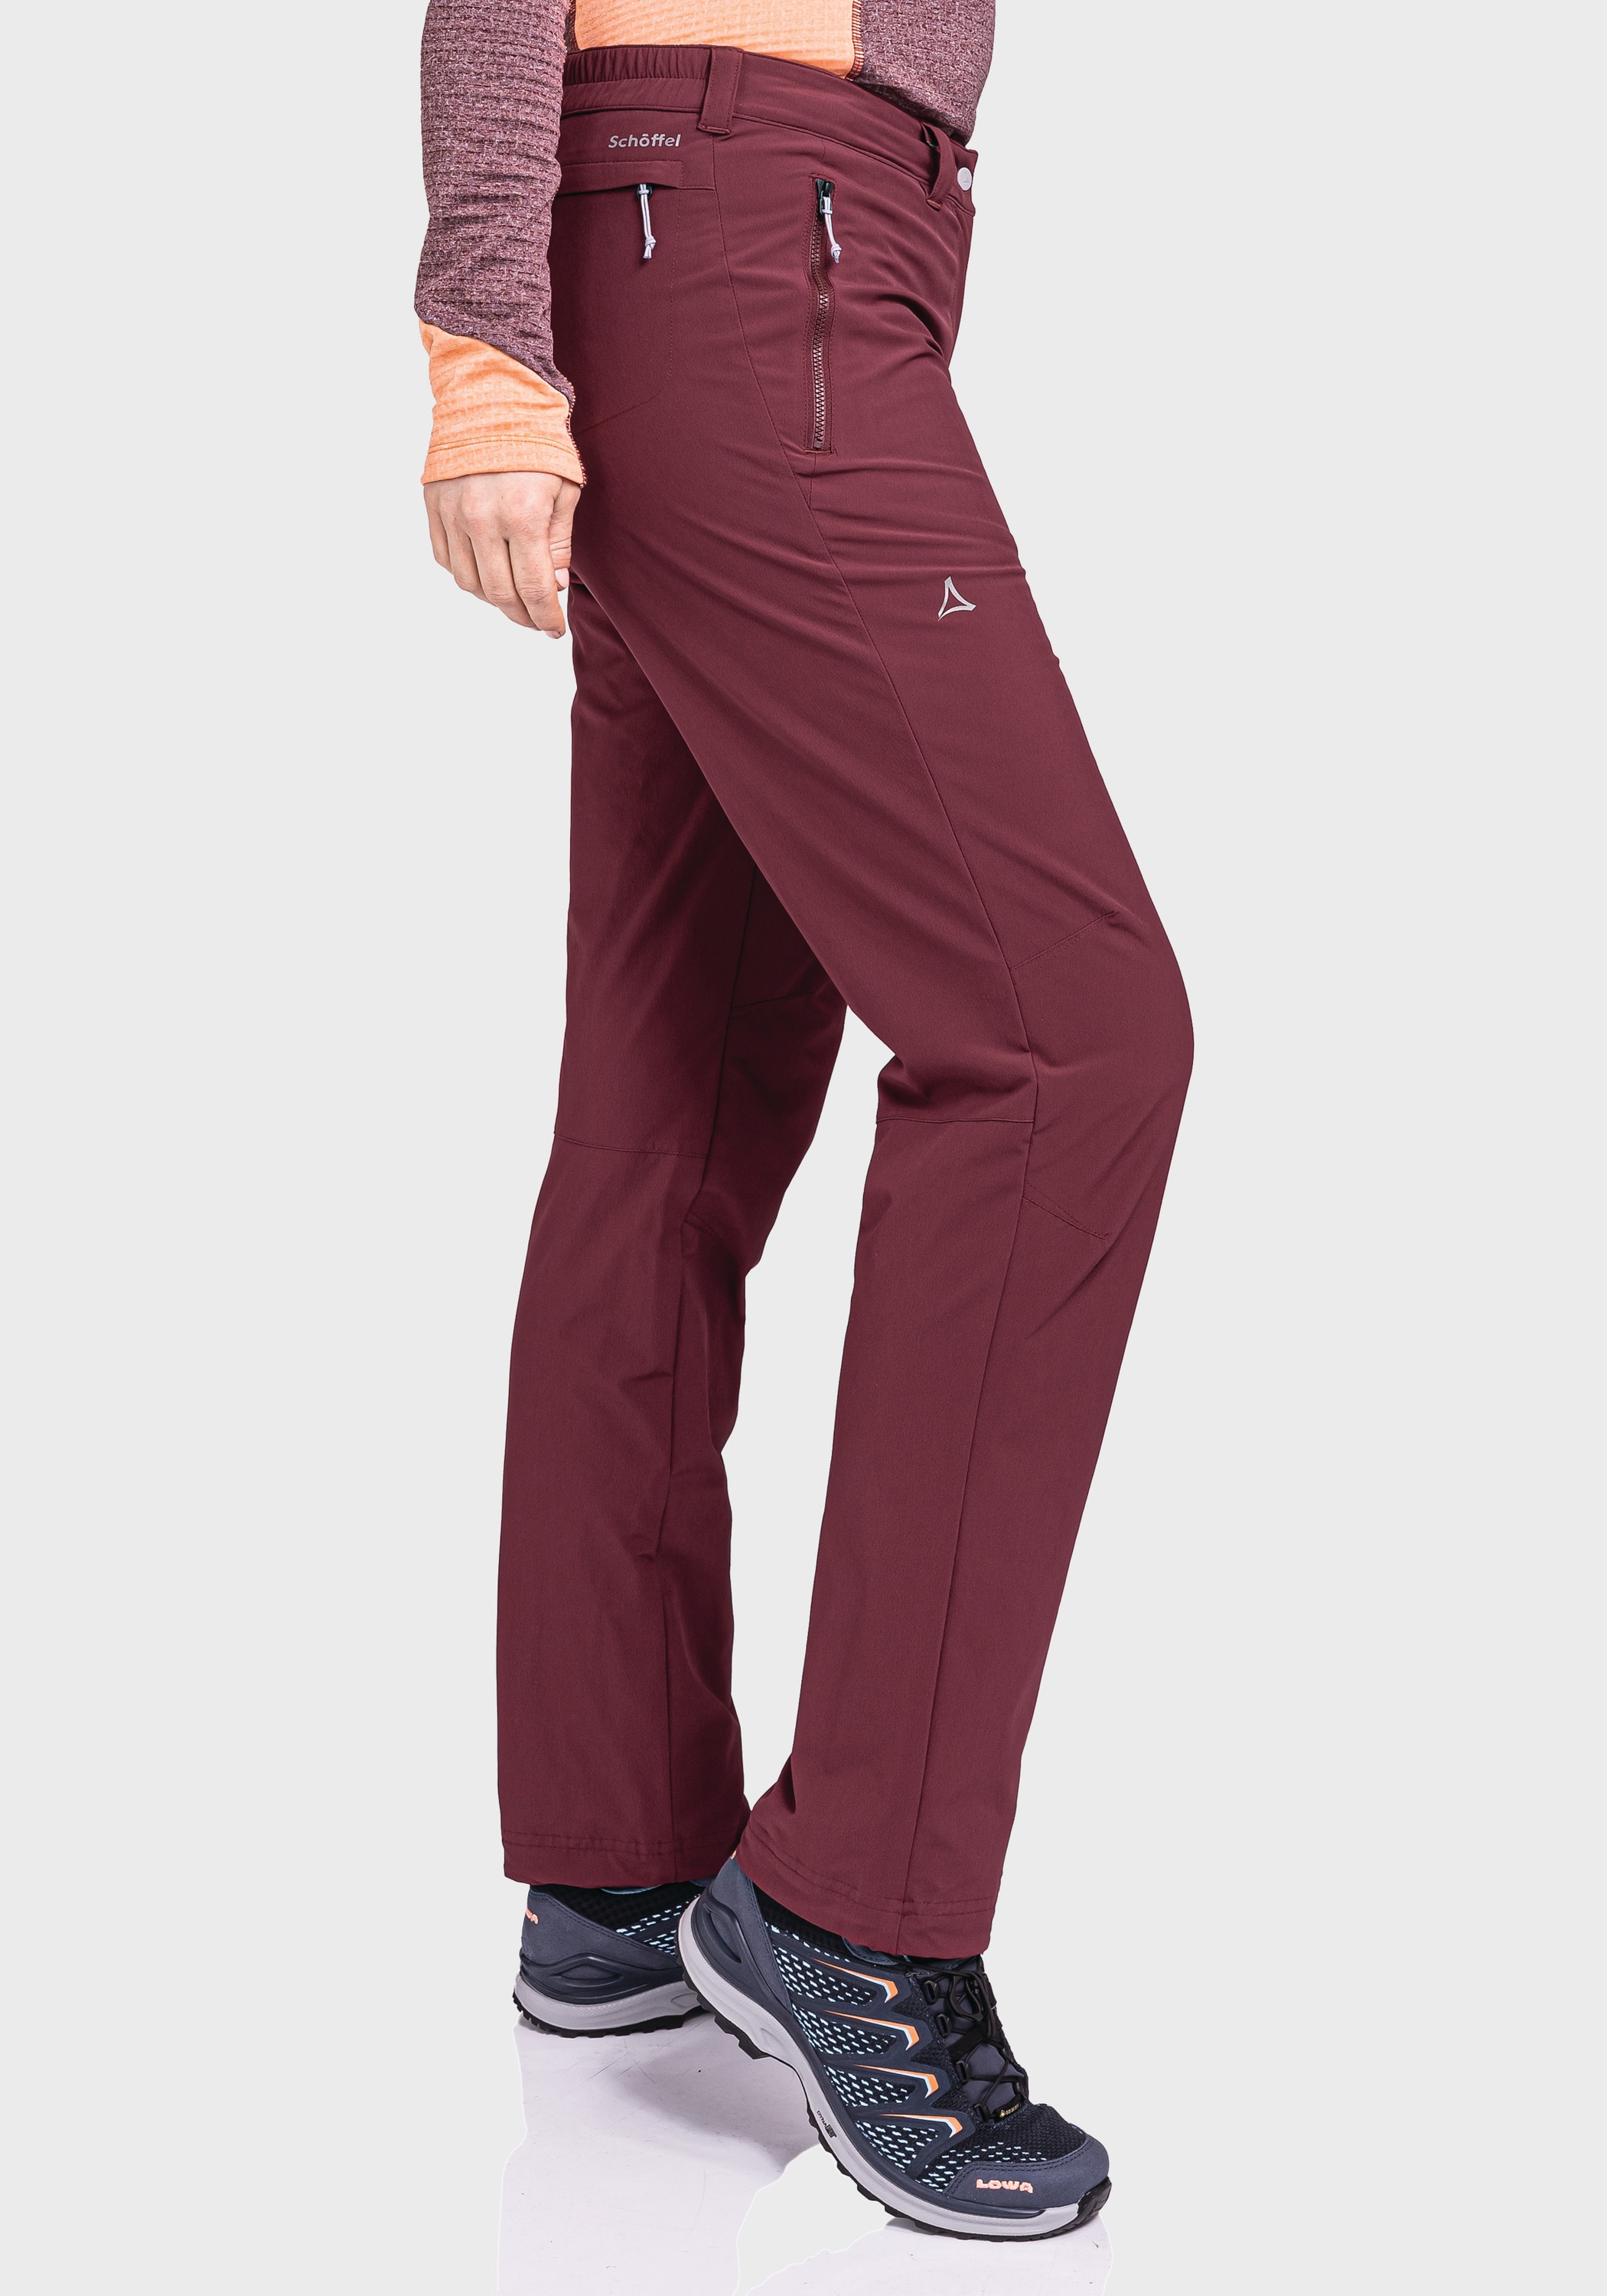 Schöffel Outdoorhose »Pants Engadin1 Warm L« online kaufen